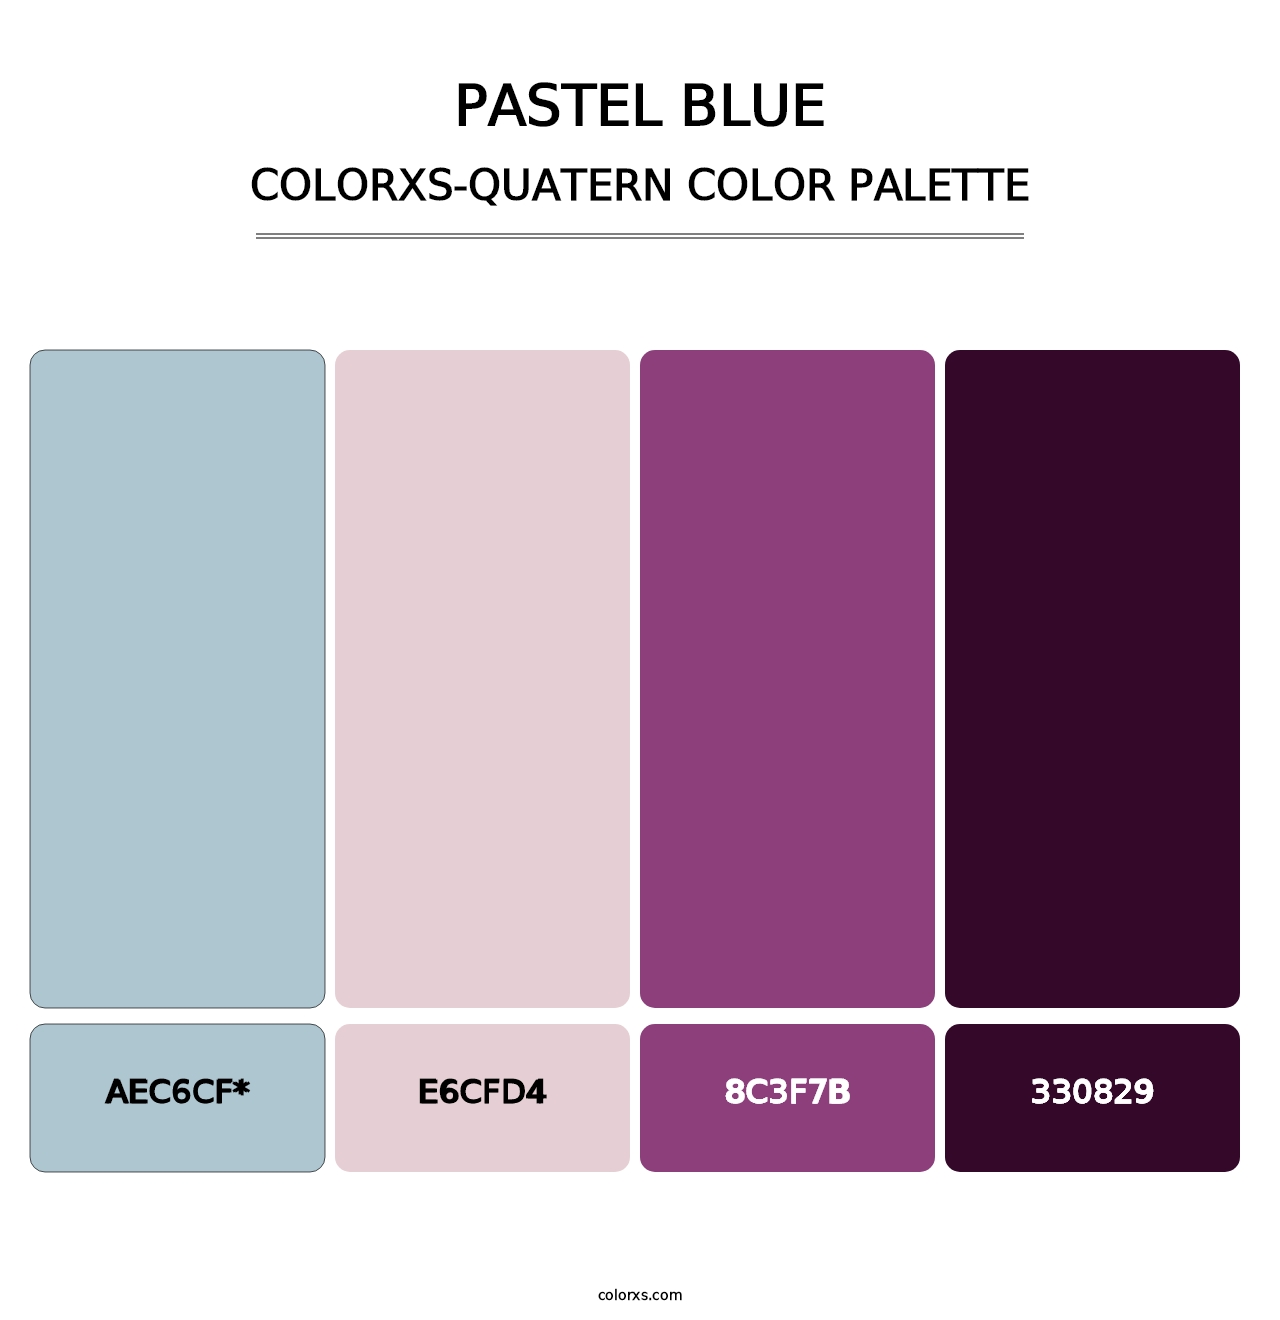 Pastel Blue - Colorxs Quatern Palette